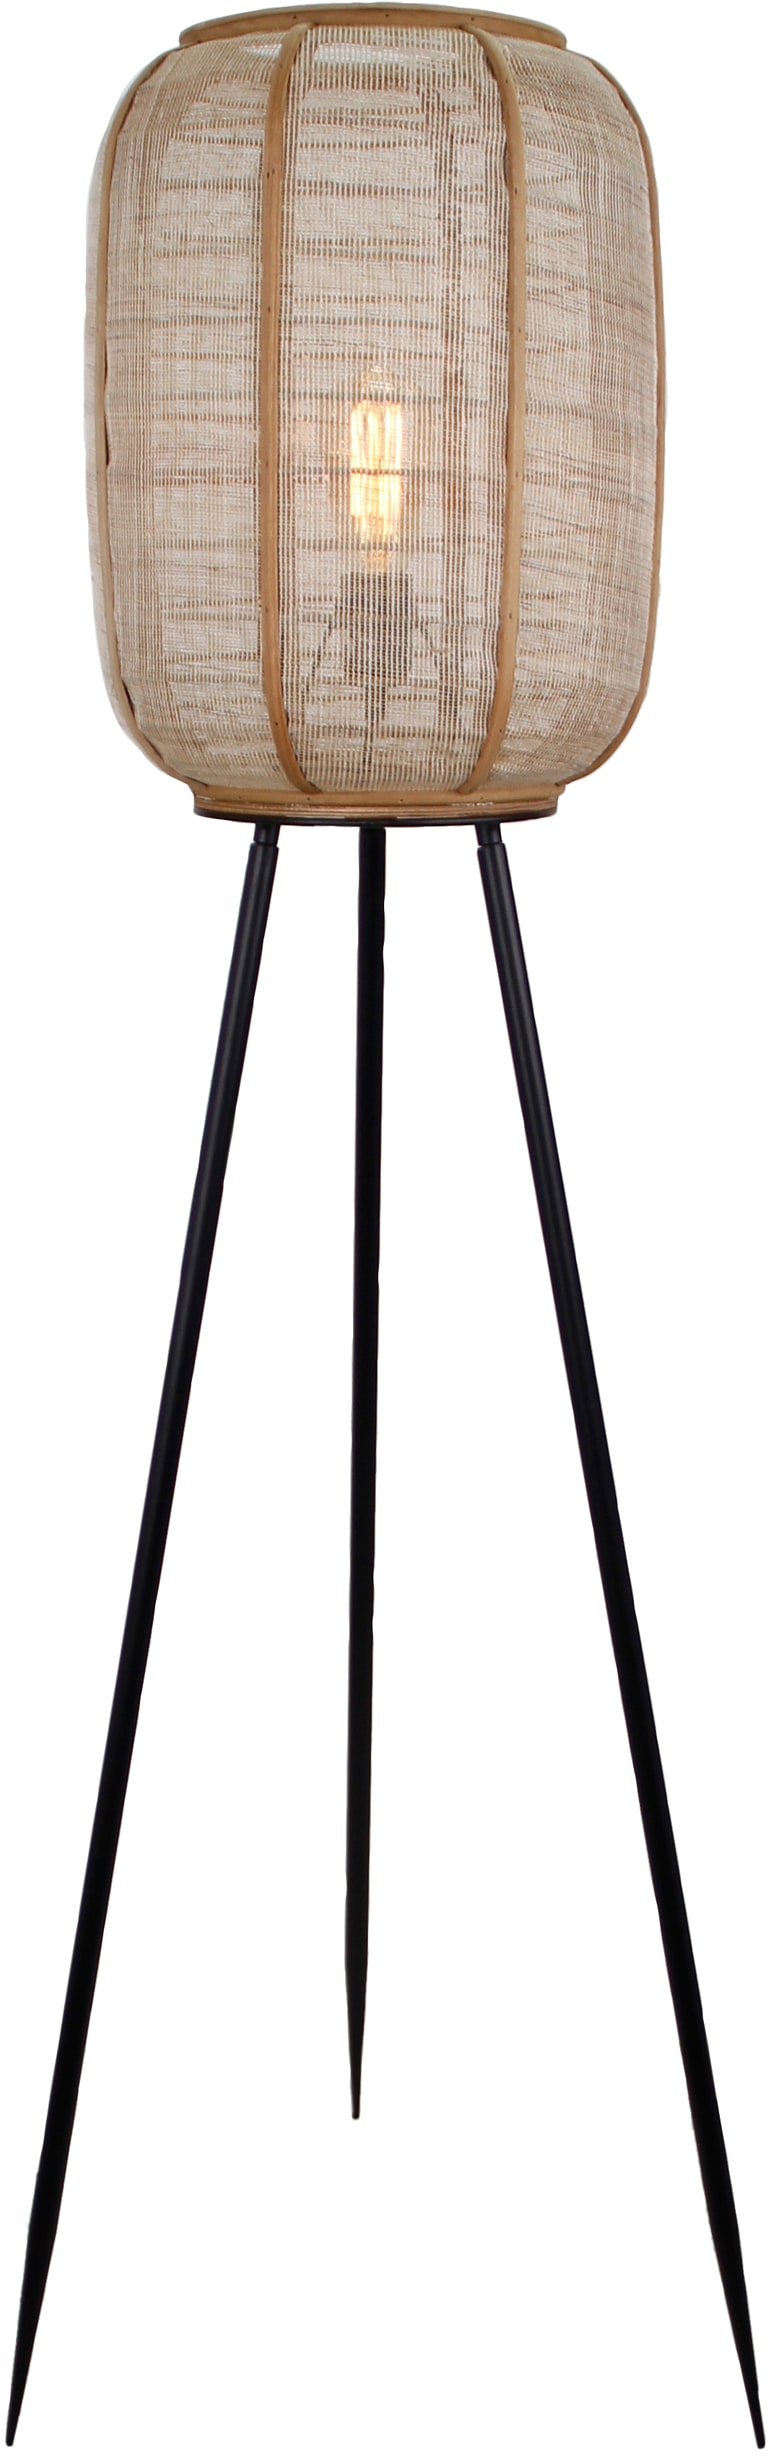 Home affaire Stehlampe »Rouez«, 1 flammig-flammig, dreibeinige Standleuchte mit 1,34m Höhe, Schirm aus Textil und Holz